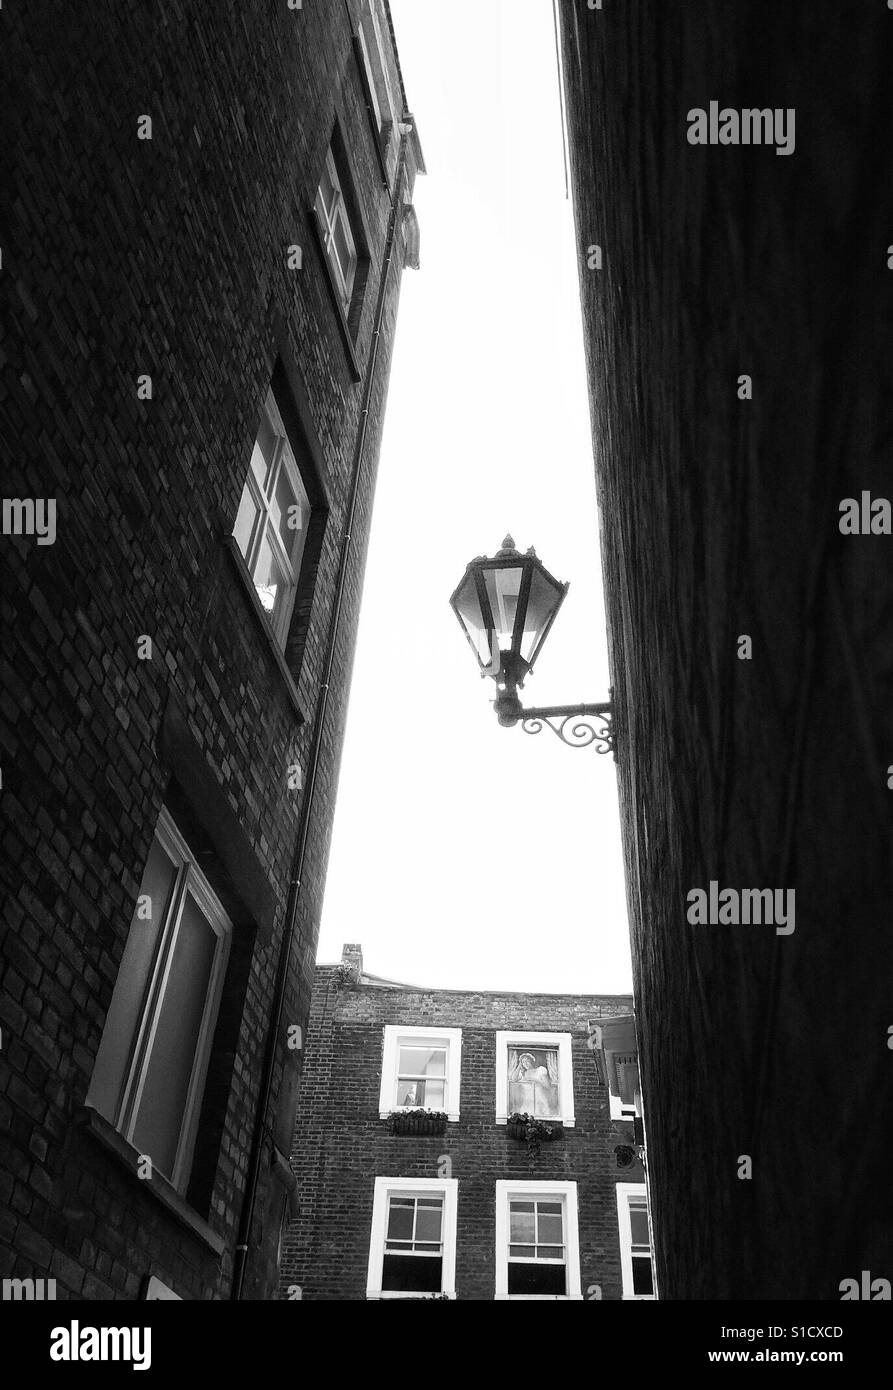 Vieille lampe de rue et étroite dans la zone de backstreet Fitzrovia London, UK. Banque D'Images